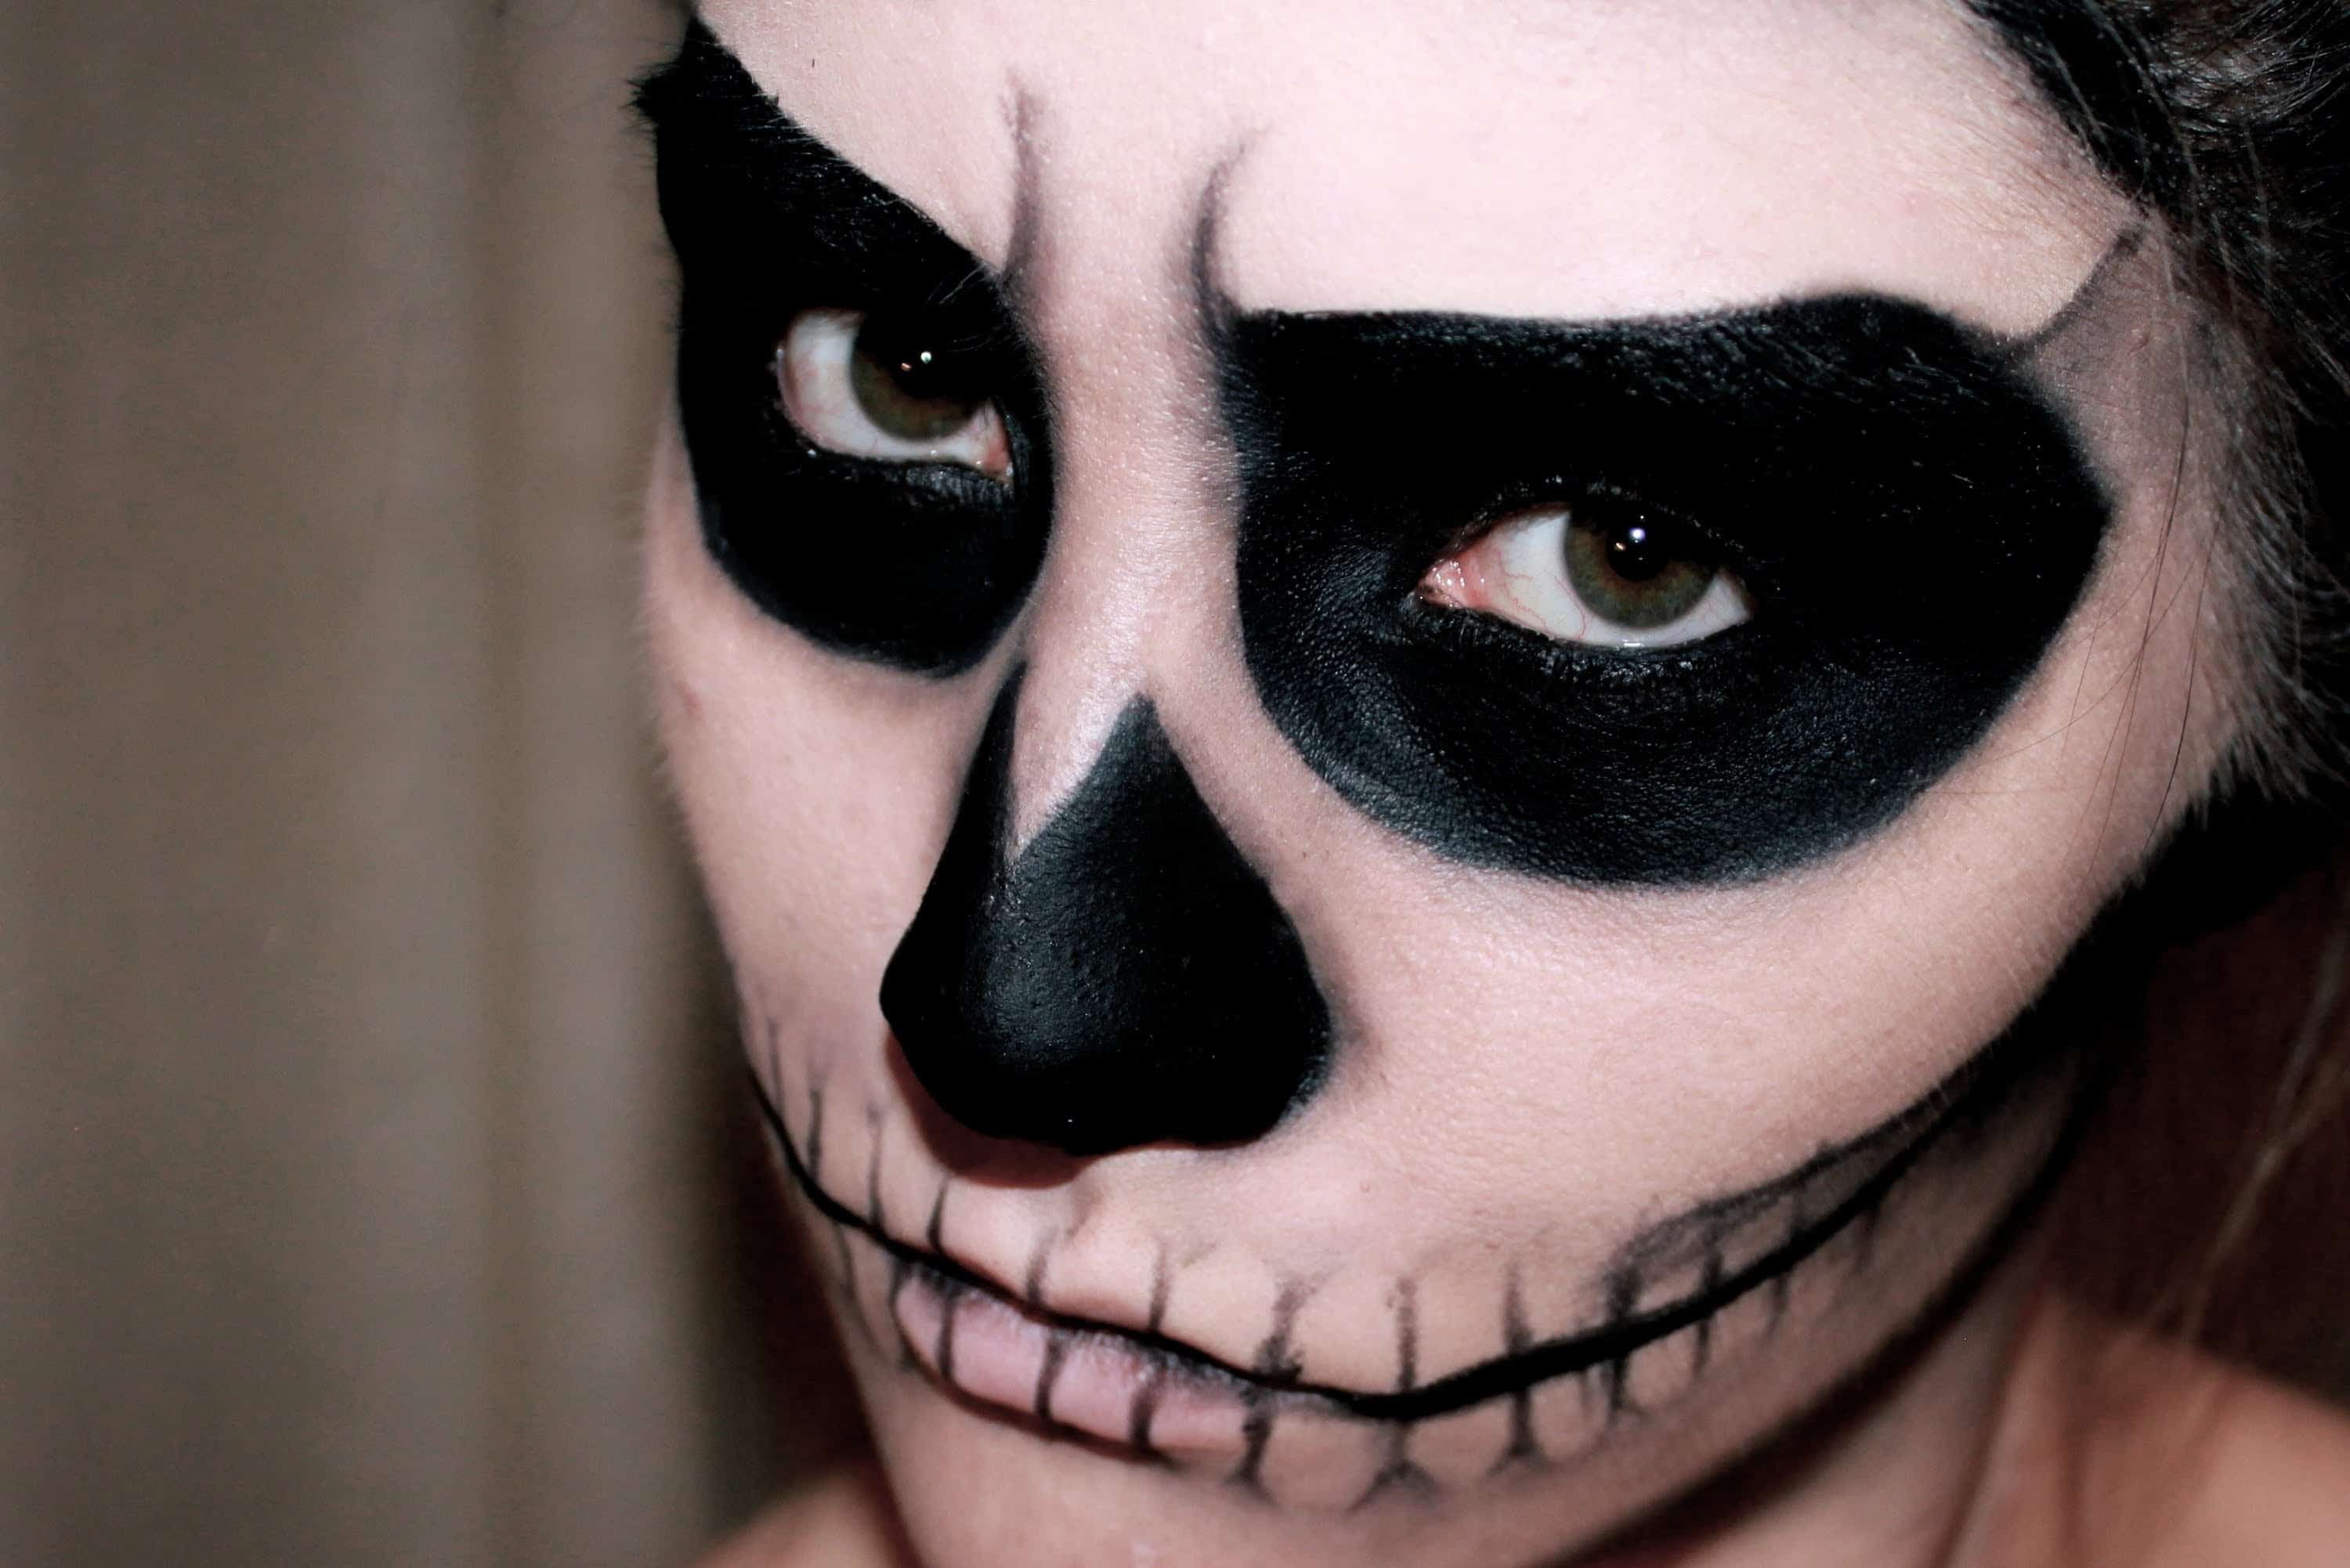 Nybegynder Stationær Stå sammen DIY Skeleton Makeup: The Terrifyingly Beautiful Halloween Trend